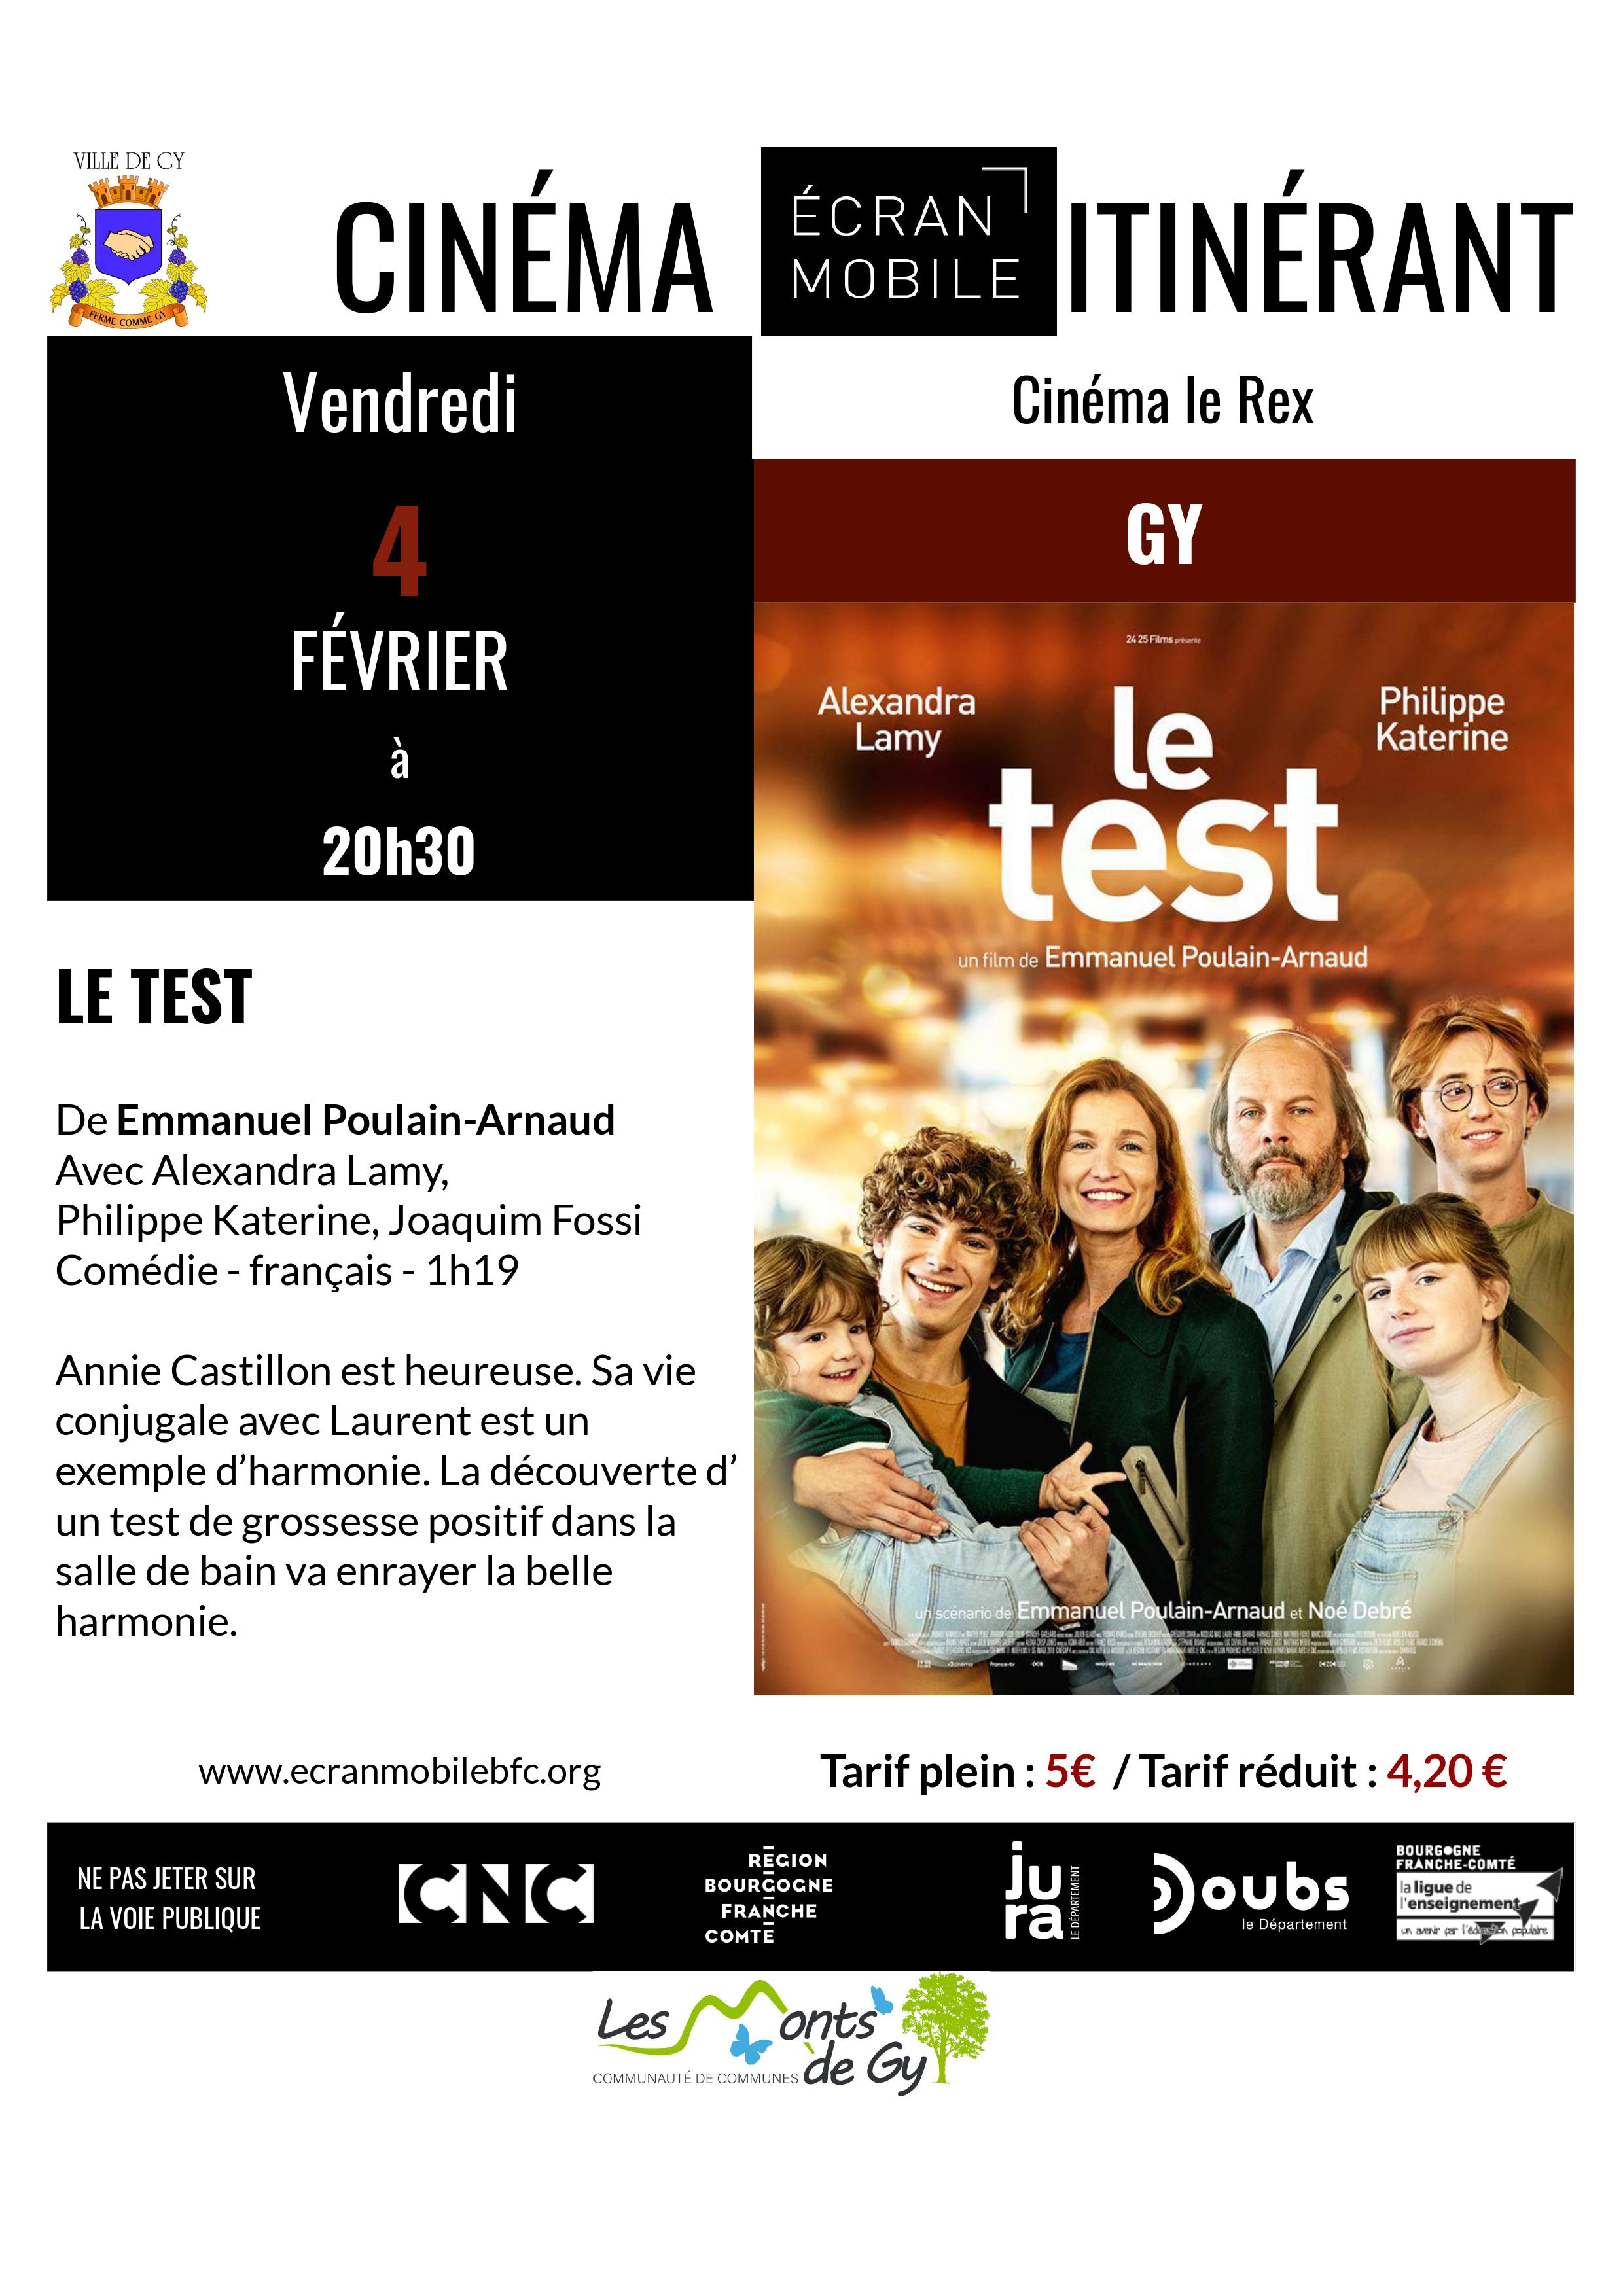 Cinéma à Gy avec le film "Le test"